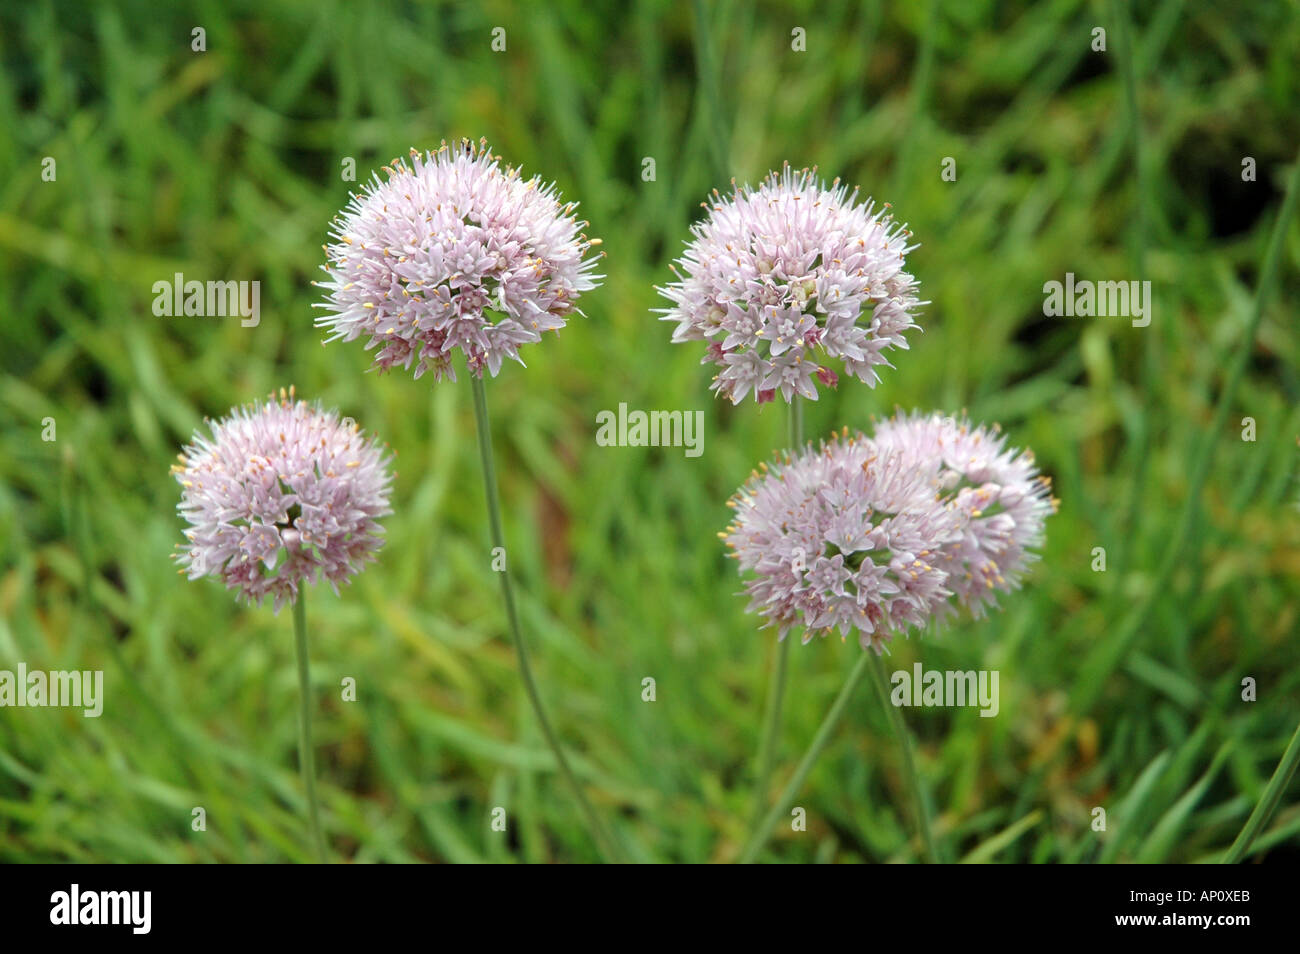 Anthyllis montana flowers synonym Vulneraria montana Stock Photo